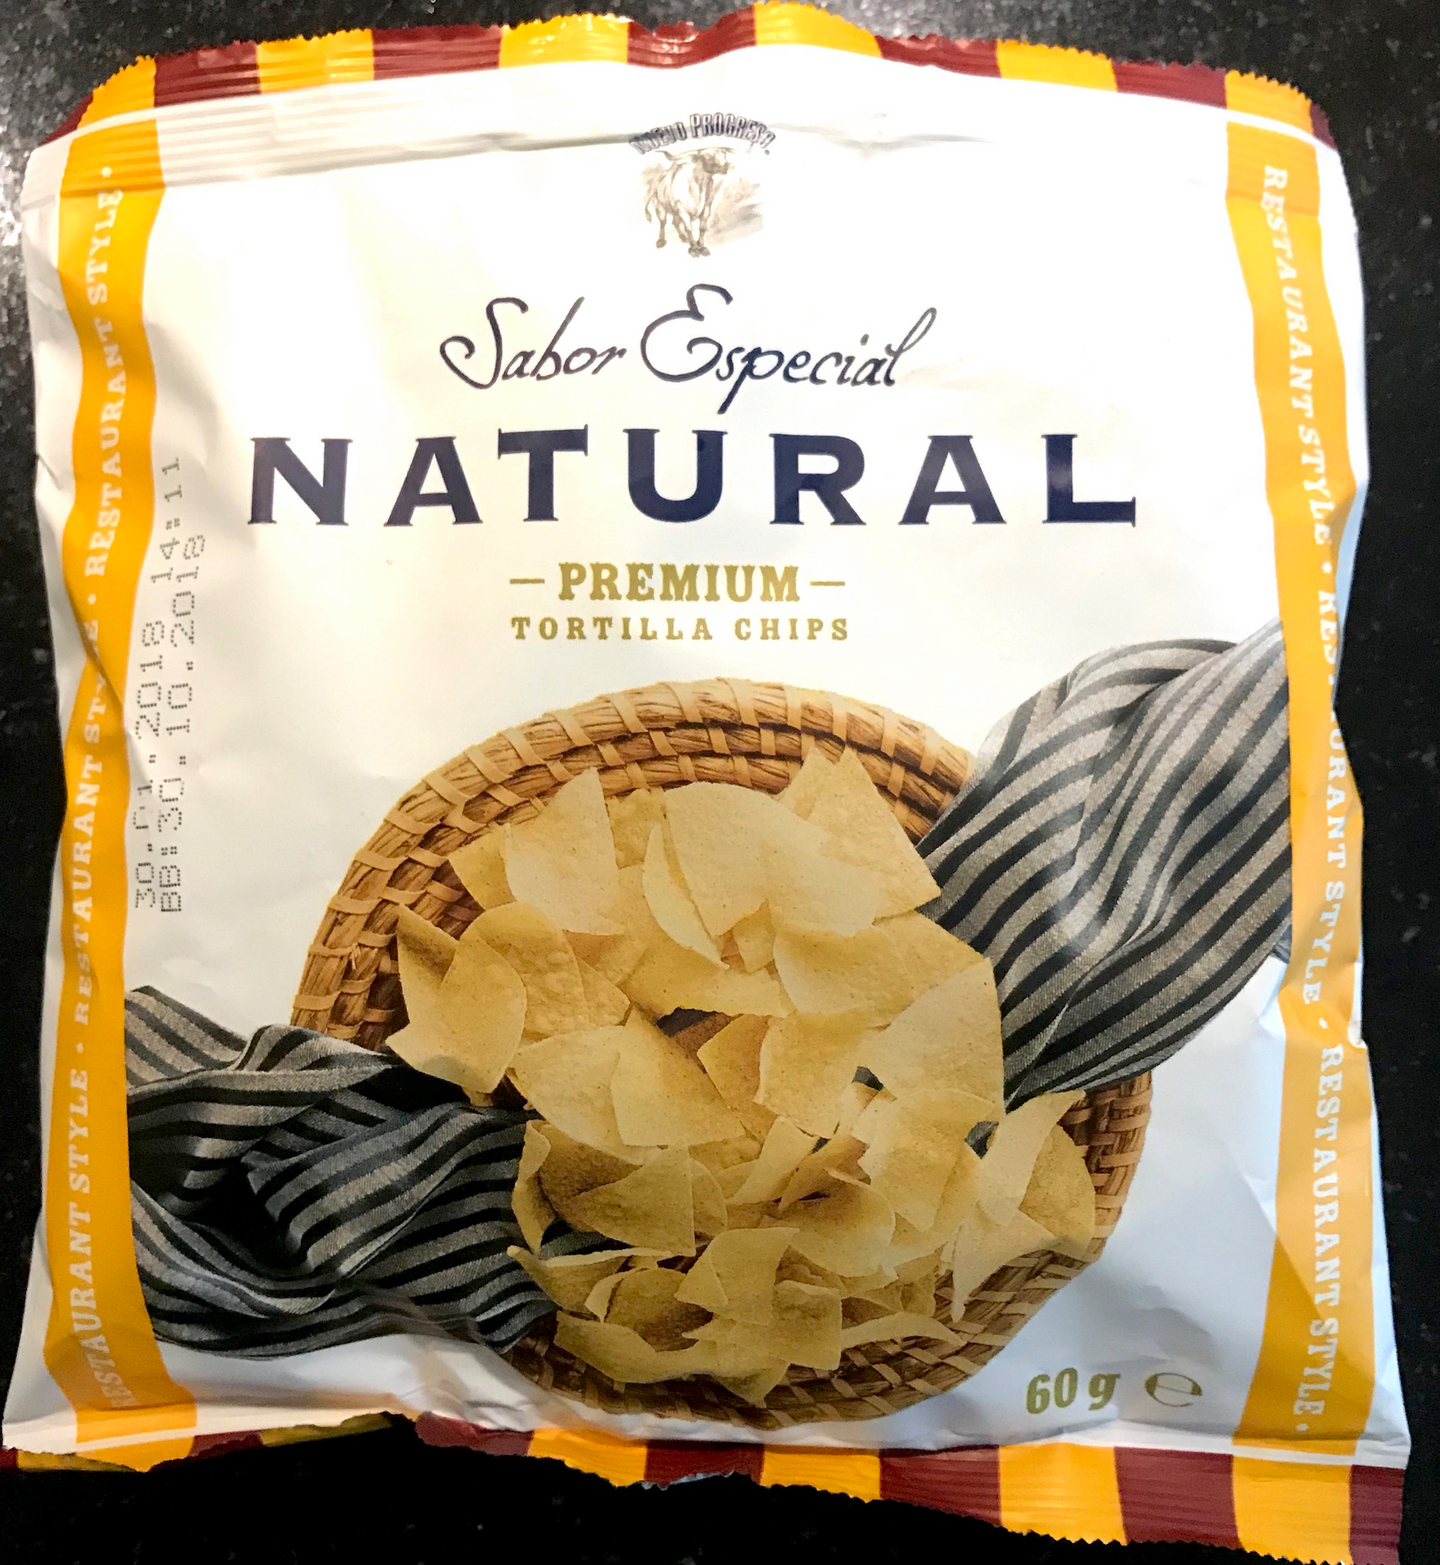 Nuevo Progreso Sabor Especial  Natural Tortilla Chips 60g Premium